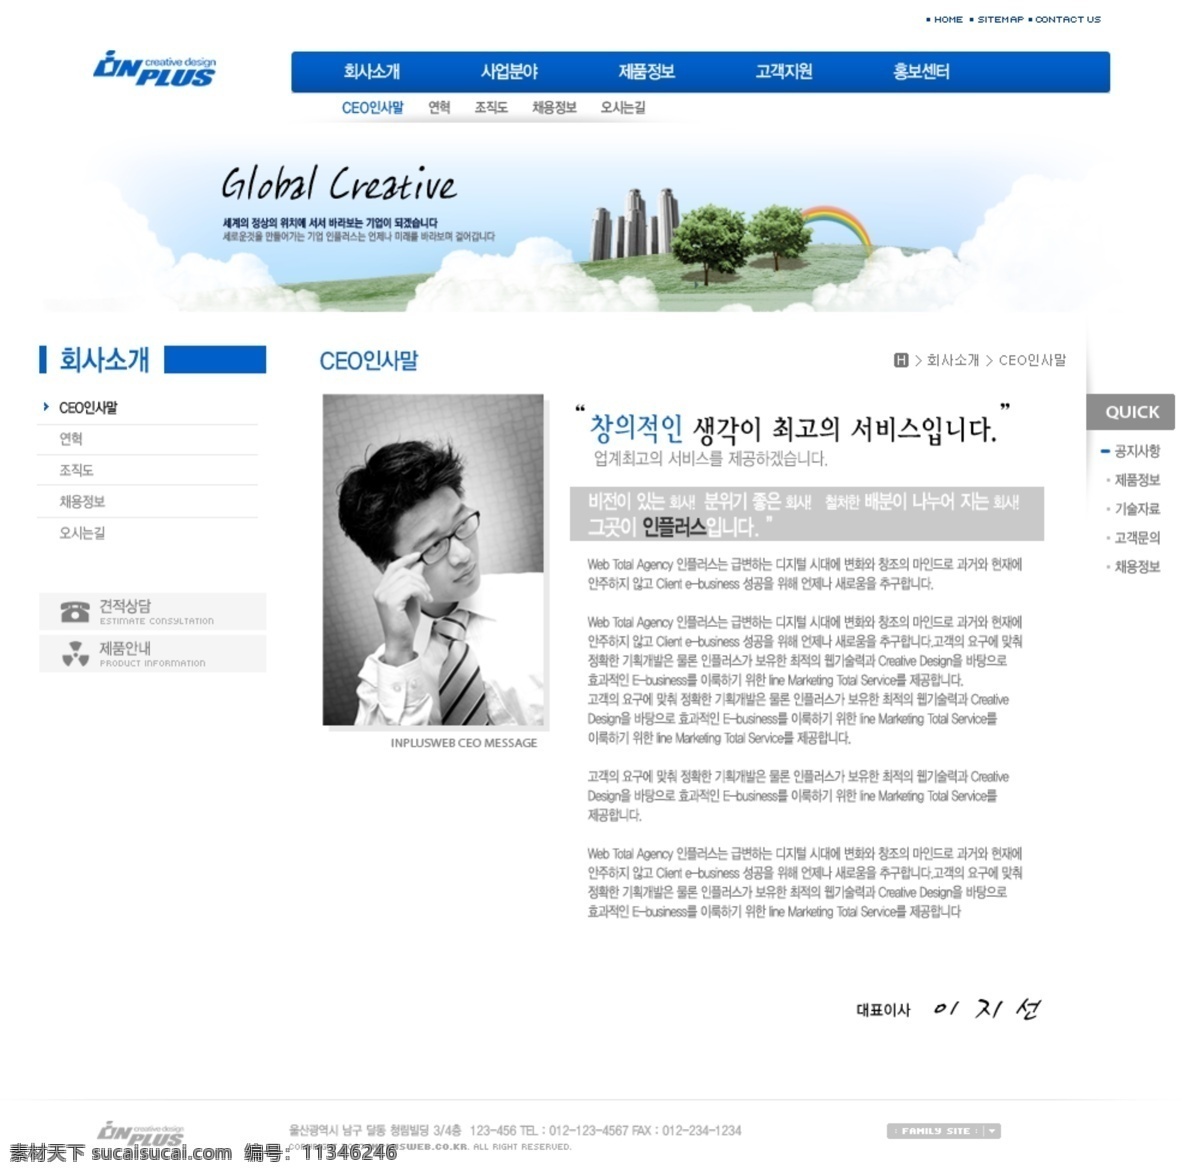 彩虹 草地 大树 广告网站 韩国模板 韩国网页模板 企业网站 数码产品 广告网页模版 行业应用 网页模板 源文件 网页素材